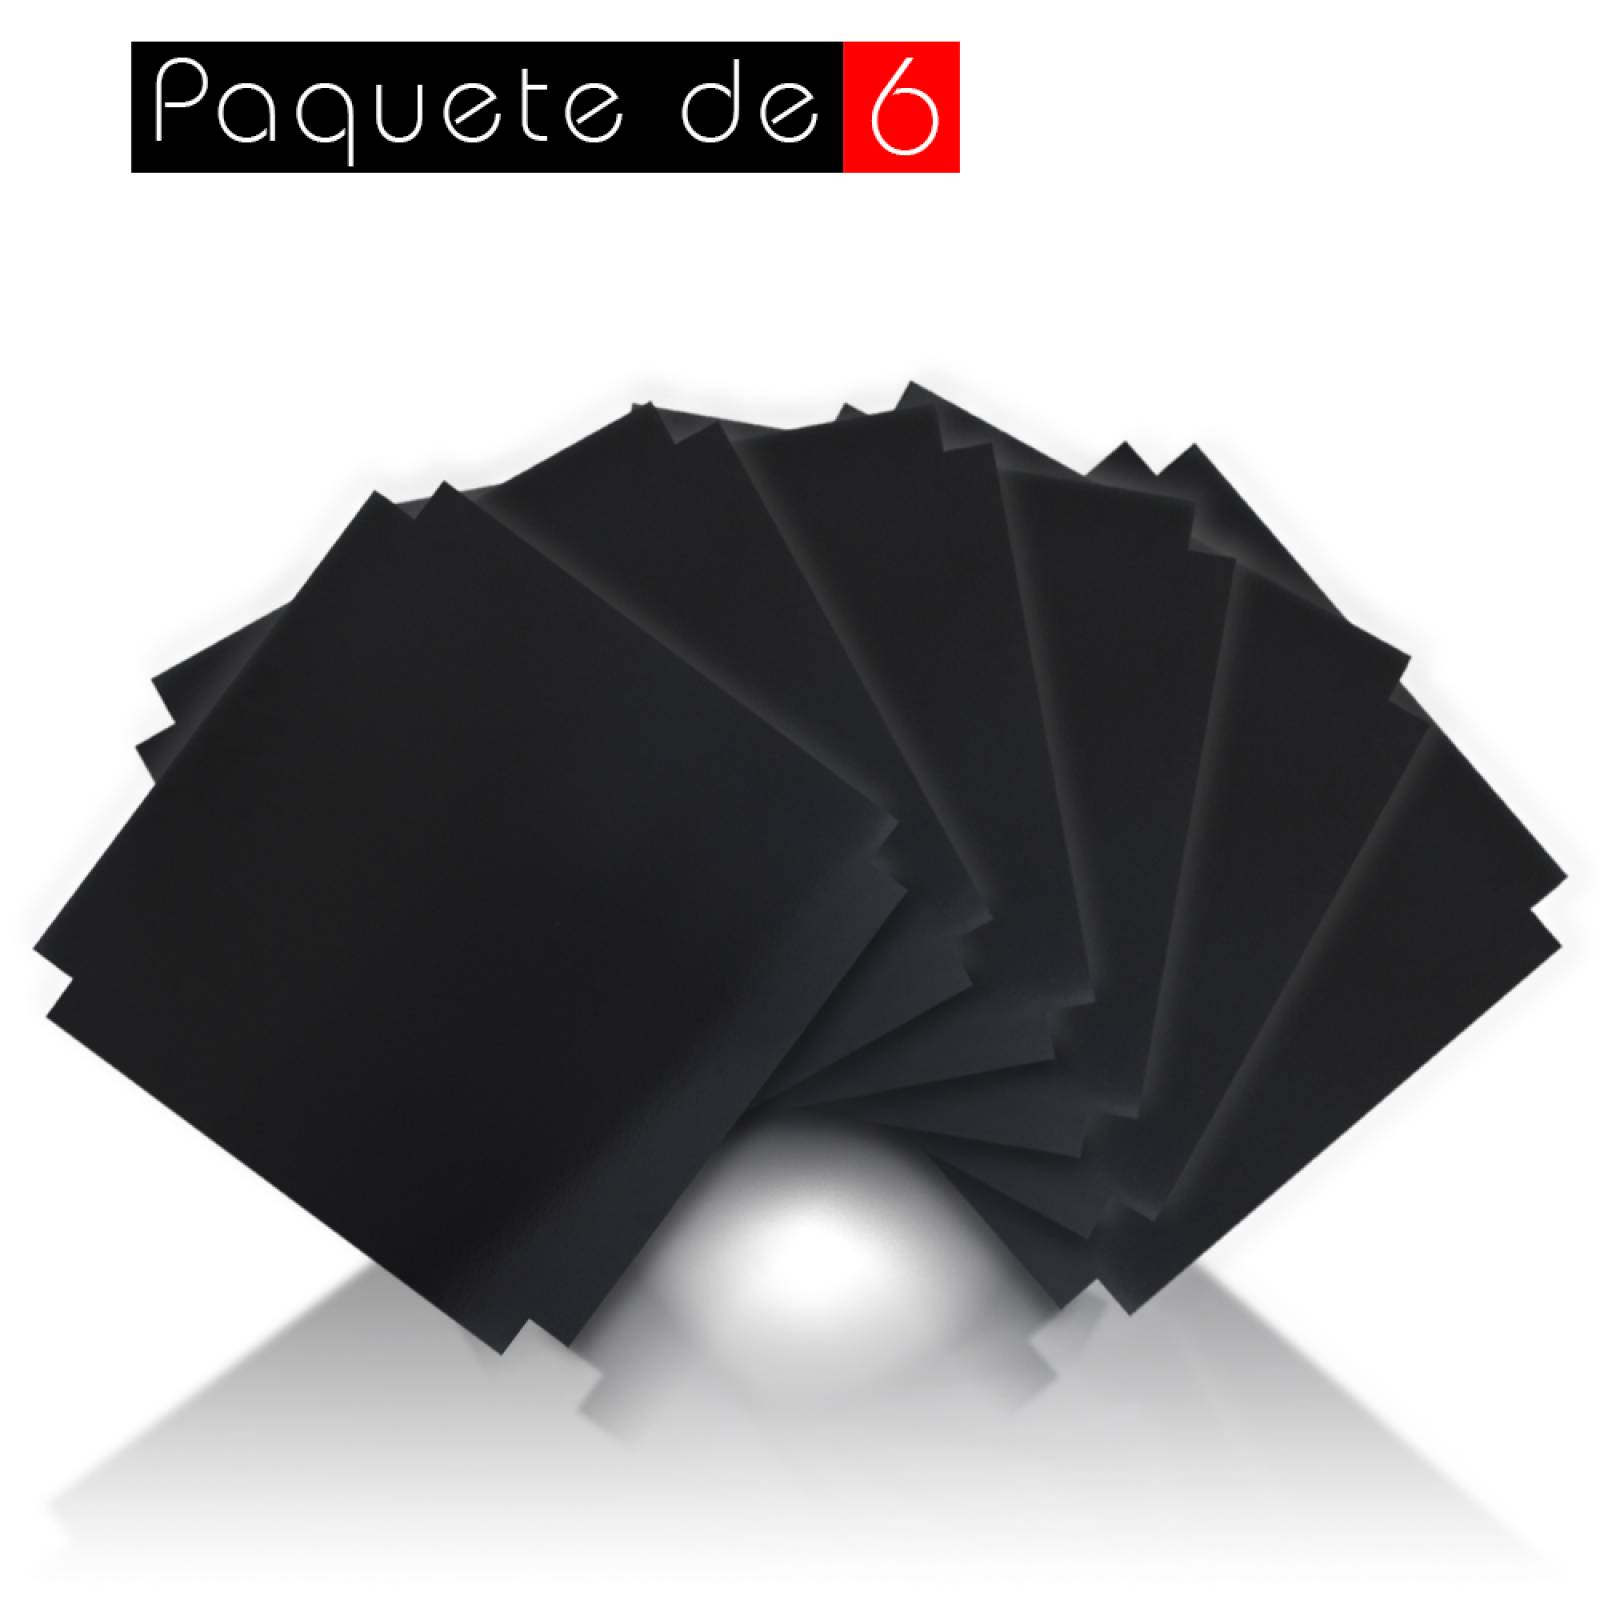 Aislante Cerámico Protector Térmico para Pared de 52 x 45 cm Negro, Paquete 6 Piezas, Mod: 4PTPP6Ne